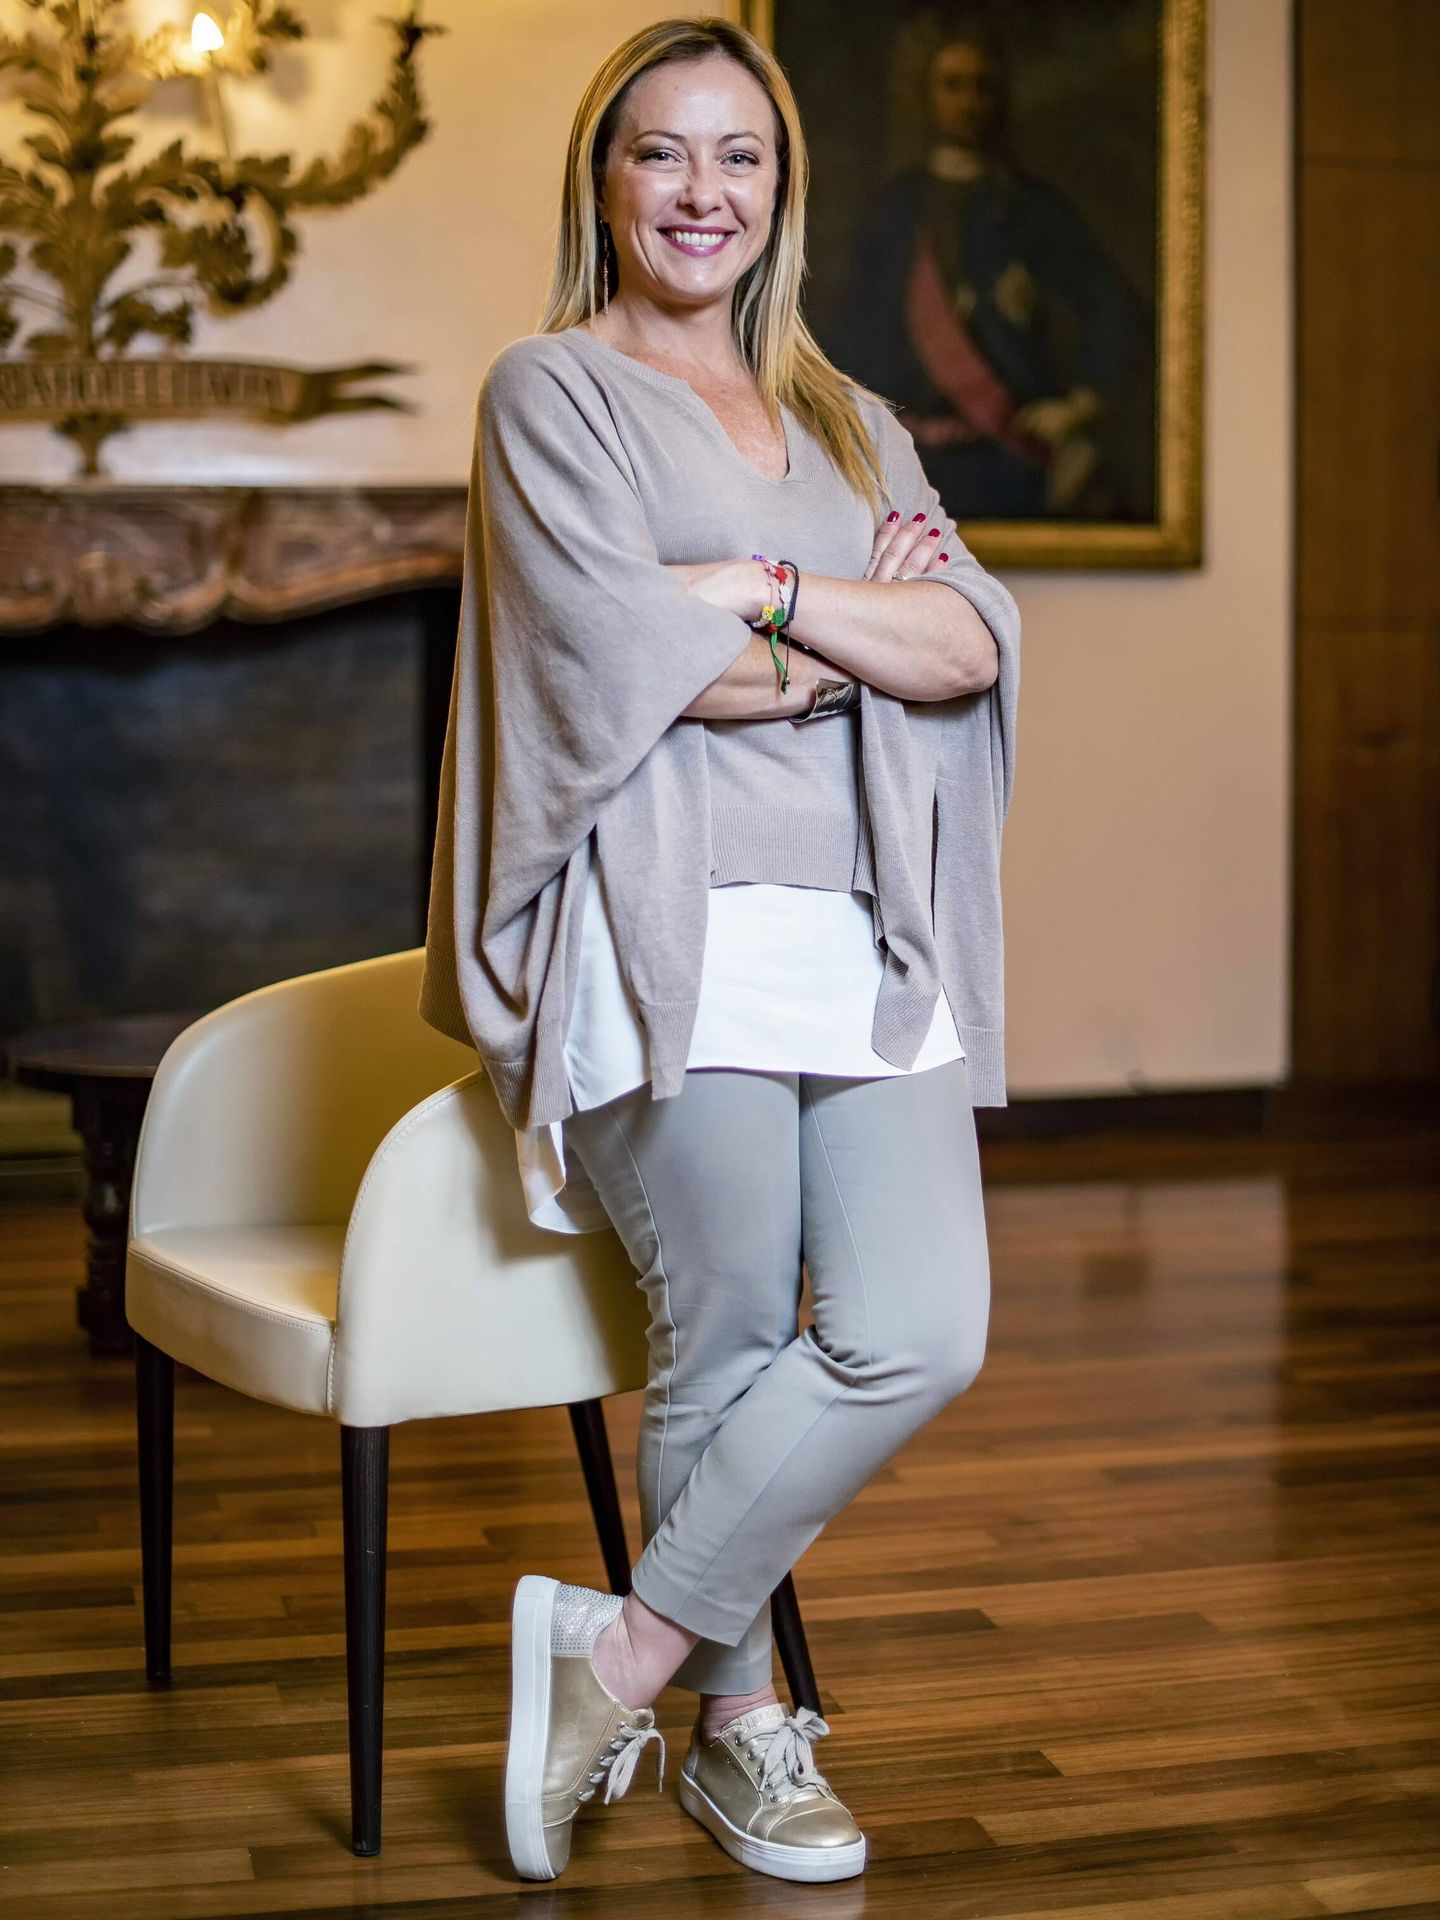 Giorgia Meloni, en su primer posado como ganadora de las elecciones italianas. (Cordon Press)